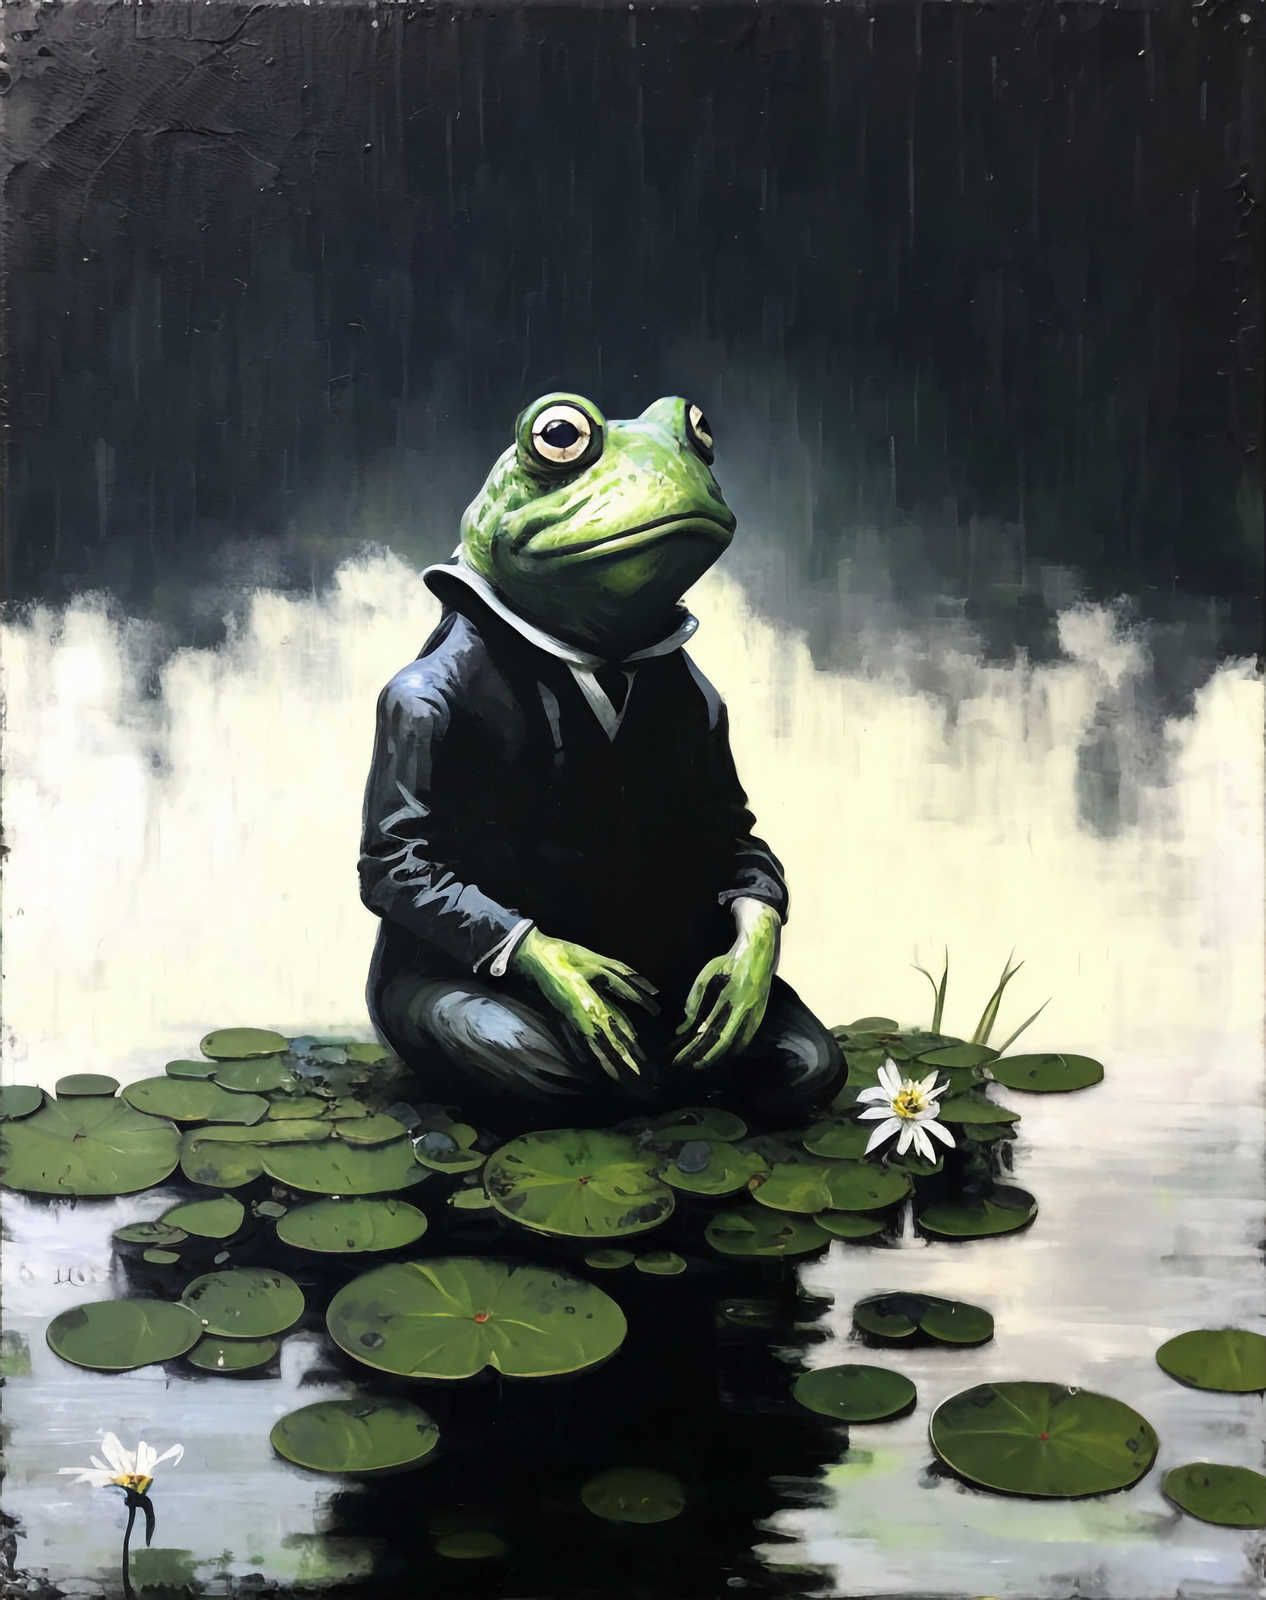             Toile KI »chilling frog« - 80 cm x 120 cm
        